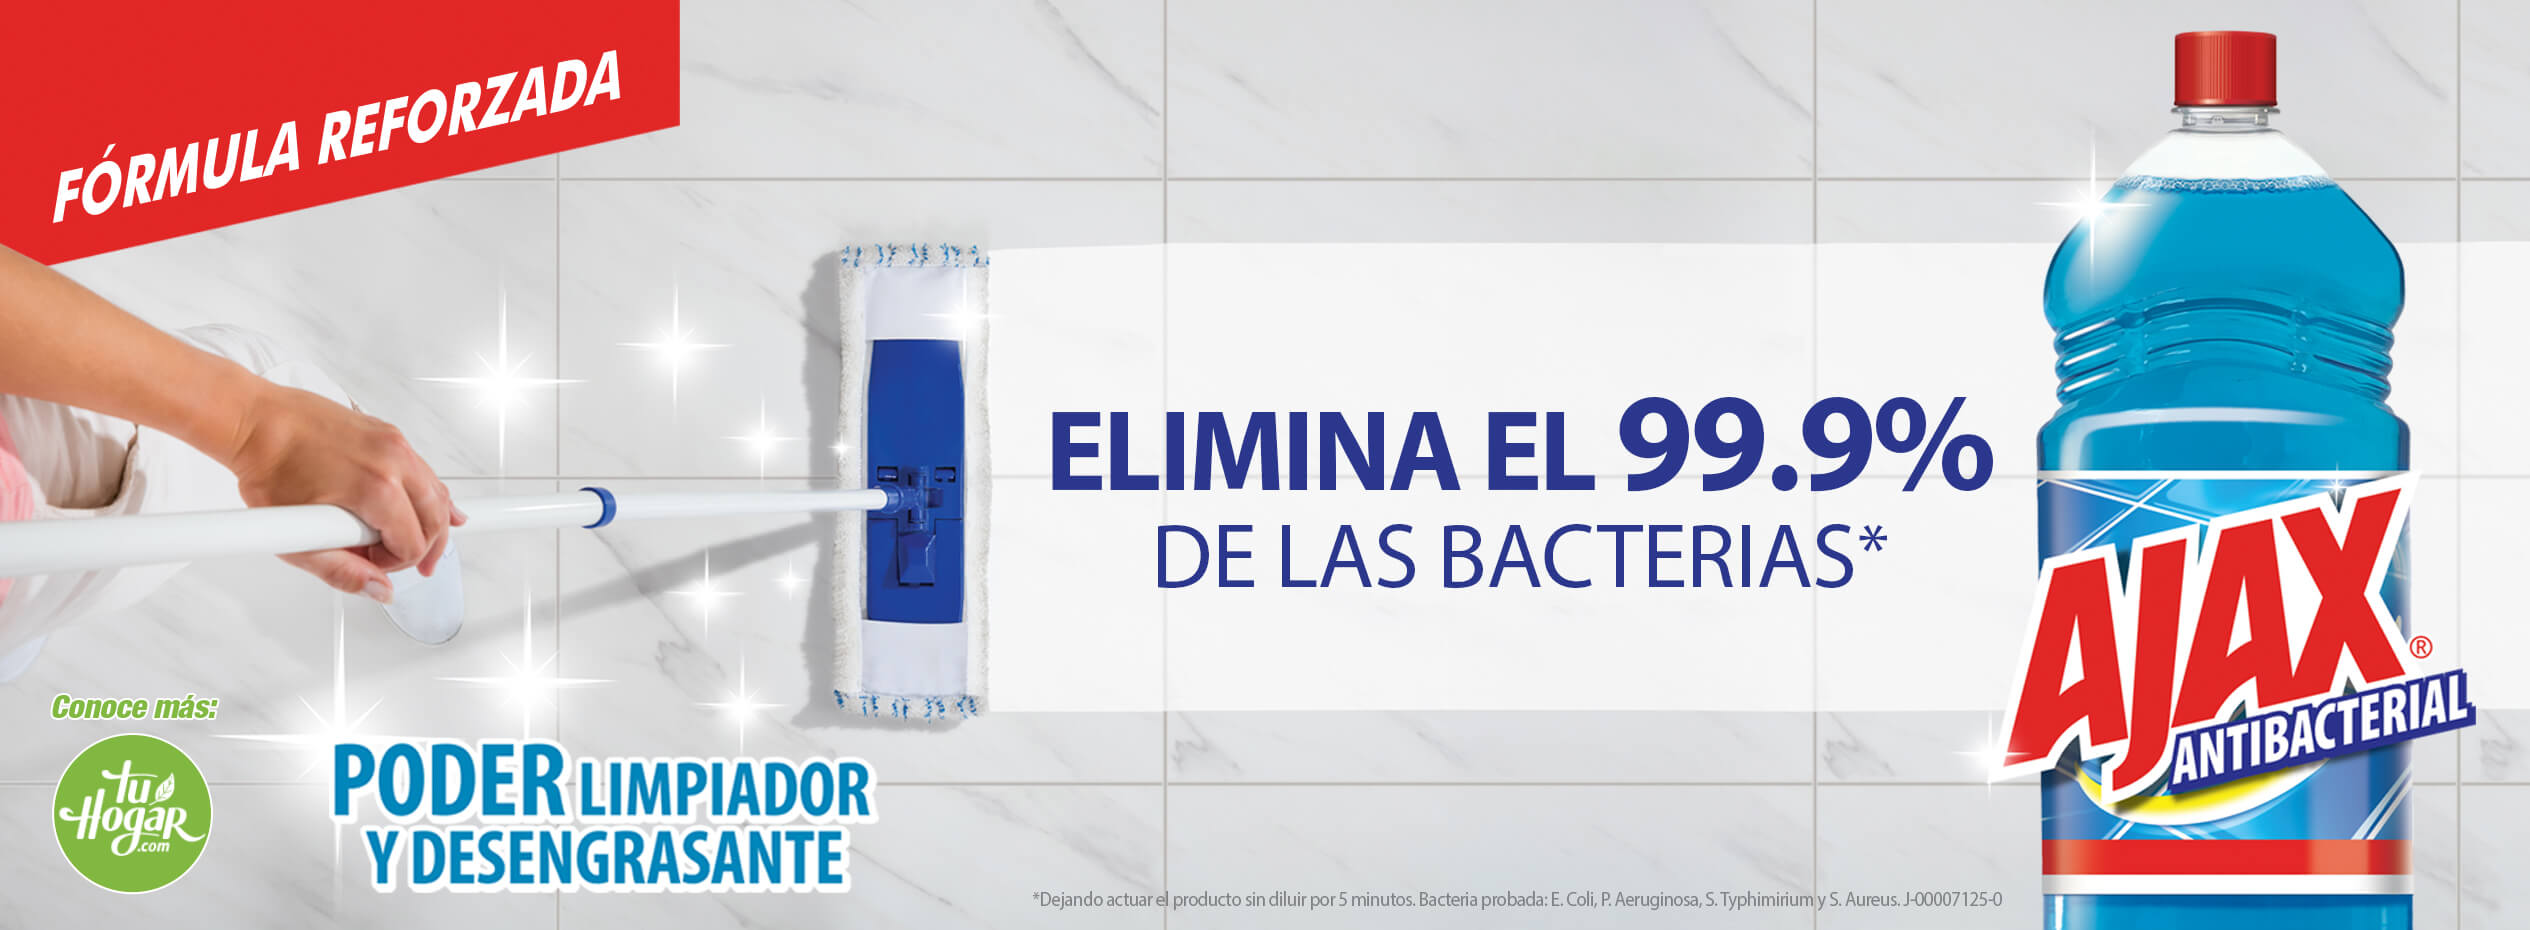 Ajax®  Multilimpiador desinfectante. Elimina el 99.99% de bacterias